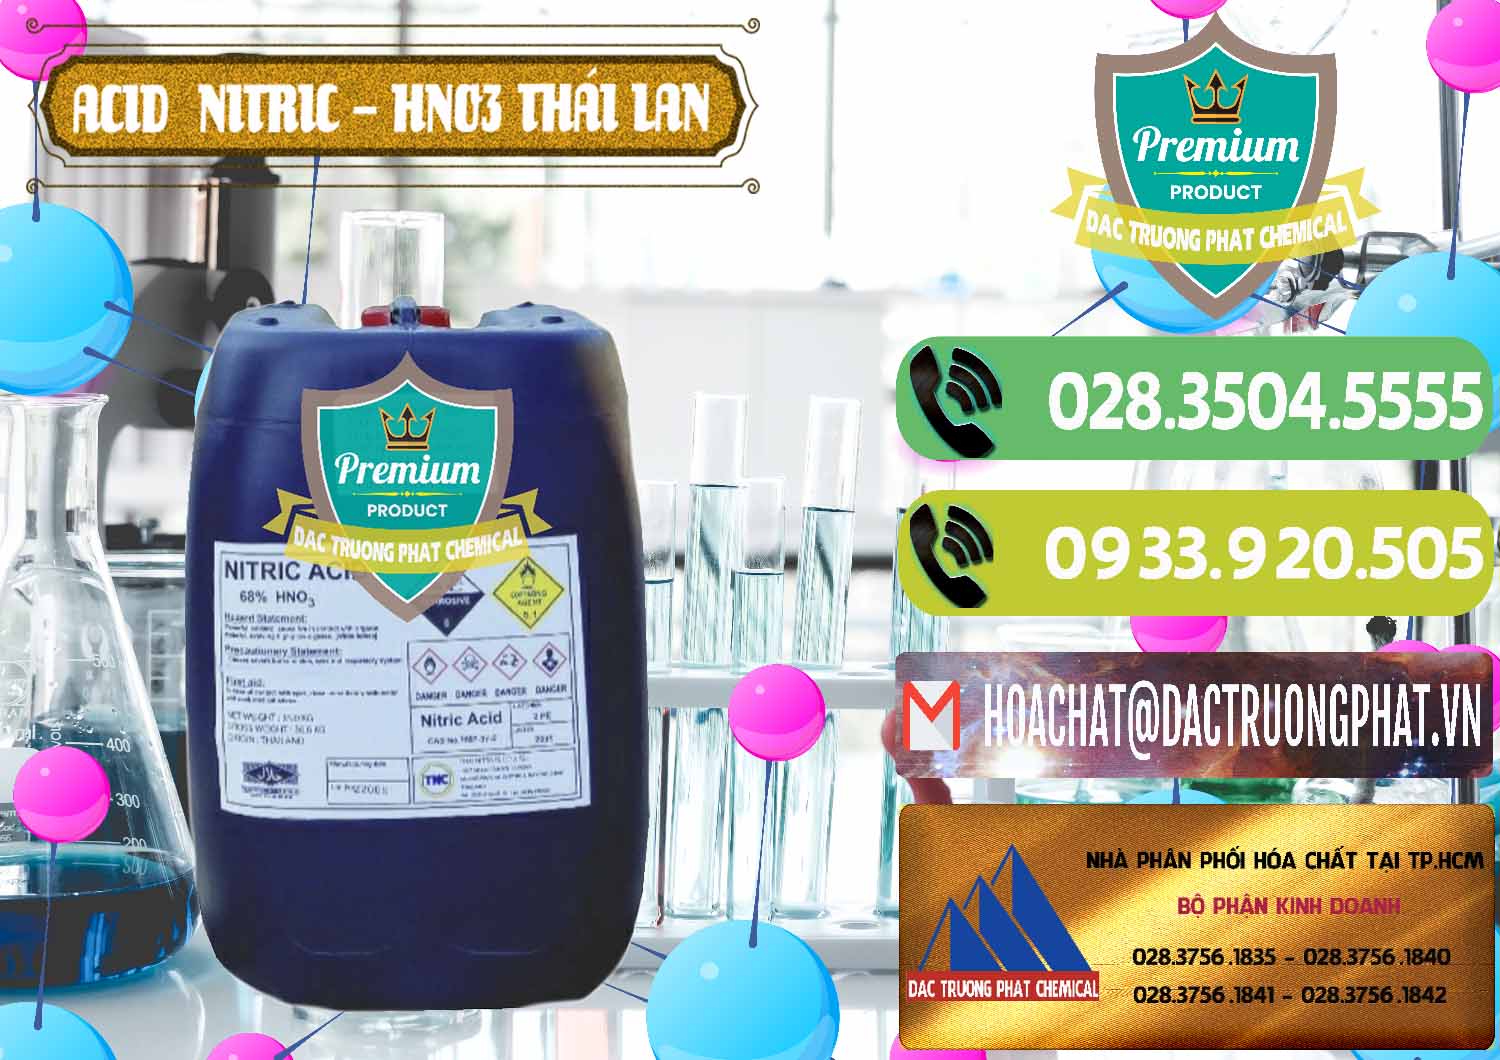 Công ty chuyên bán _ cung cấp Acid Nitric – Axit Nitric HNO3 Thái Lan Thailand - 0344 - Nơi chuyên nhập khẩu & phân phối hóa chất tại TP.HCM - hoachatmientay.vn